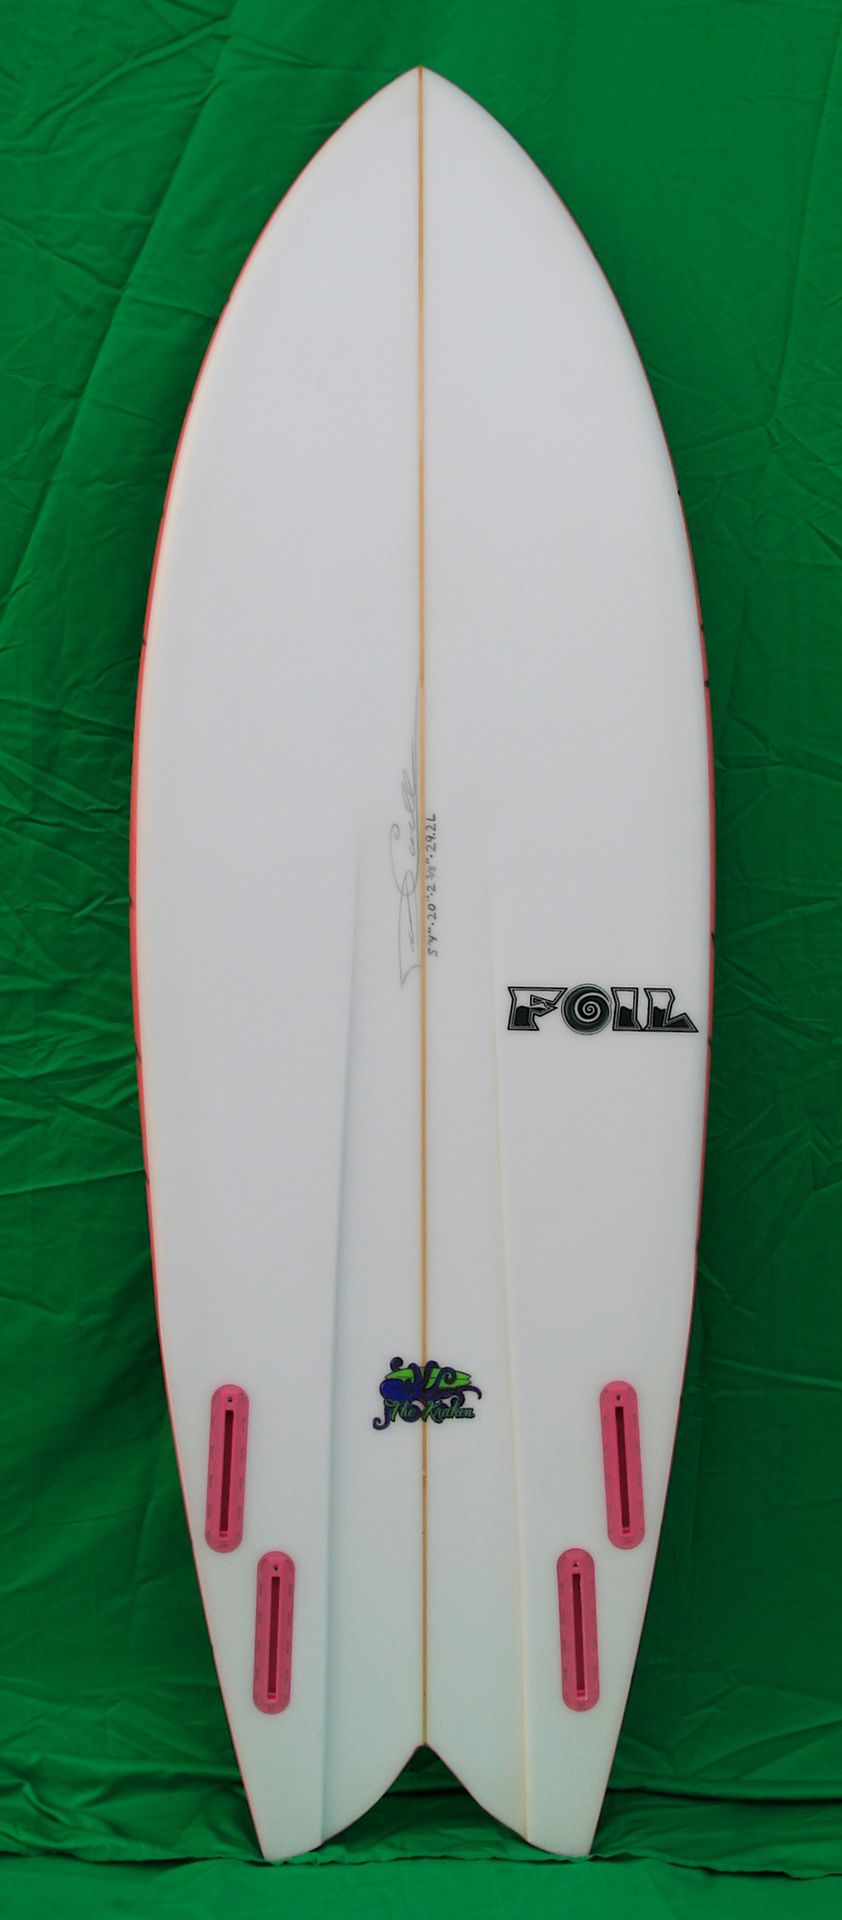 5’4” FOIL “The Kraken” surfboard